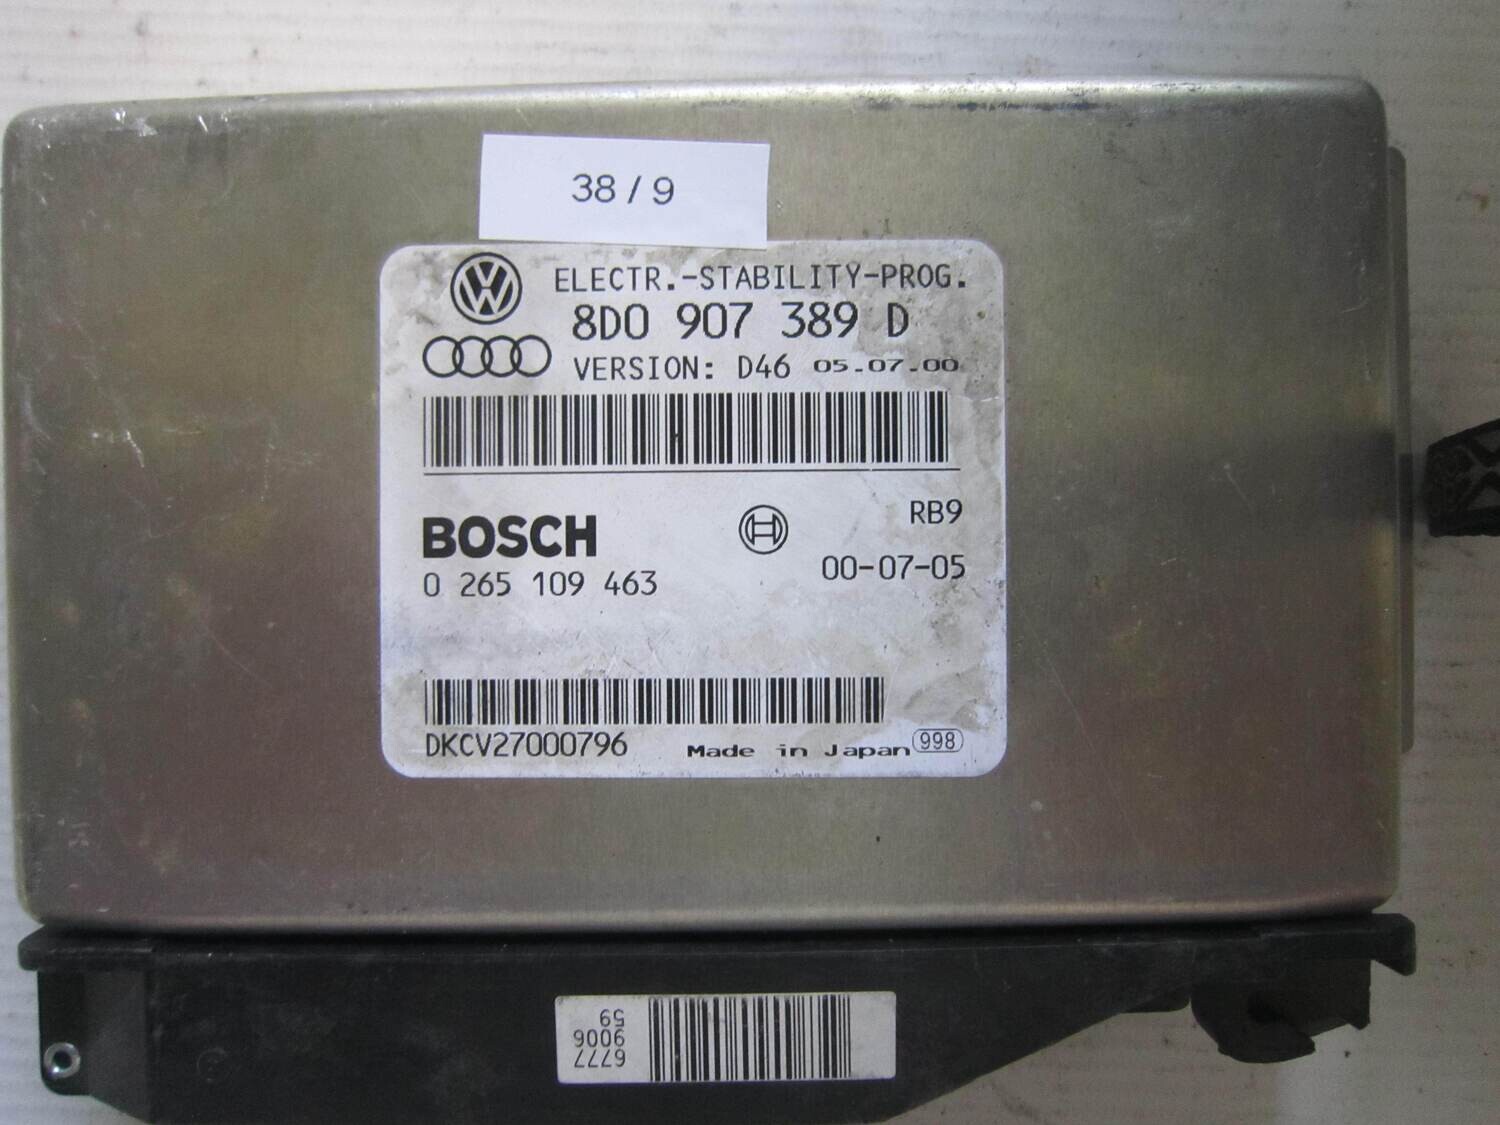 38-9 Centralina ABS ESP HBA Bosch 0 265 109 463 0265109463 8D0 907 389 D 8D0907389D D46 VOLKSWAGEN VARIE